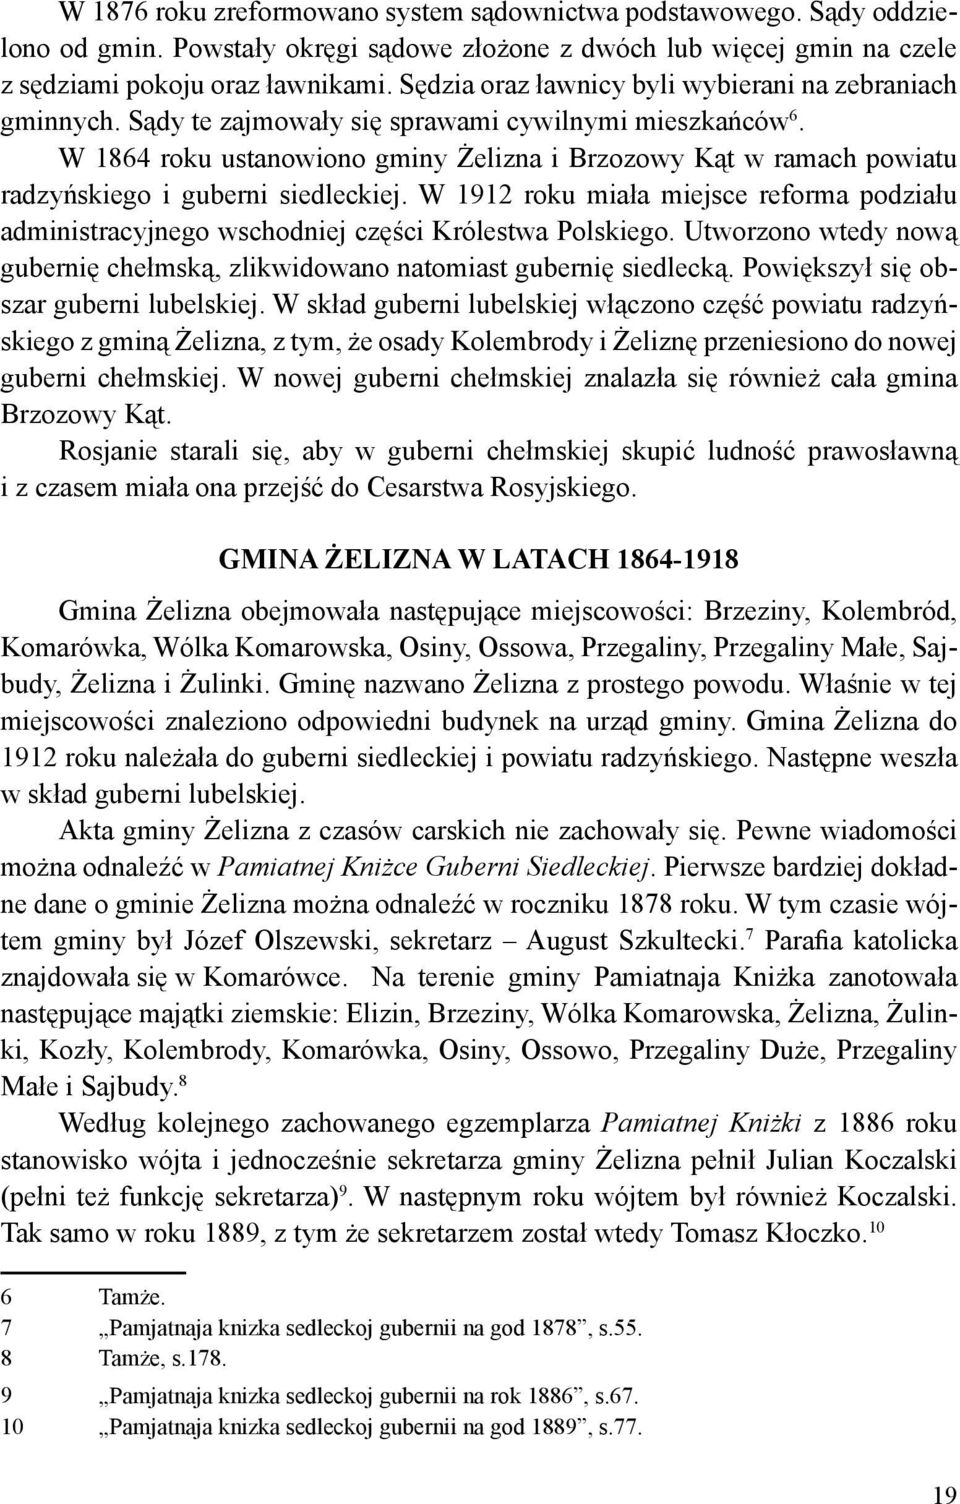 W 1864 roku ustanowiono gminy Żelizna i Brzozowy Kąt w ramach powiatu radzyńskiego i guberni siedleckiej.